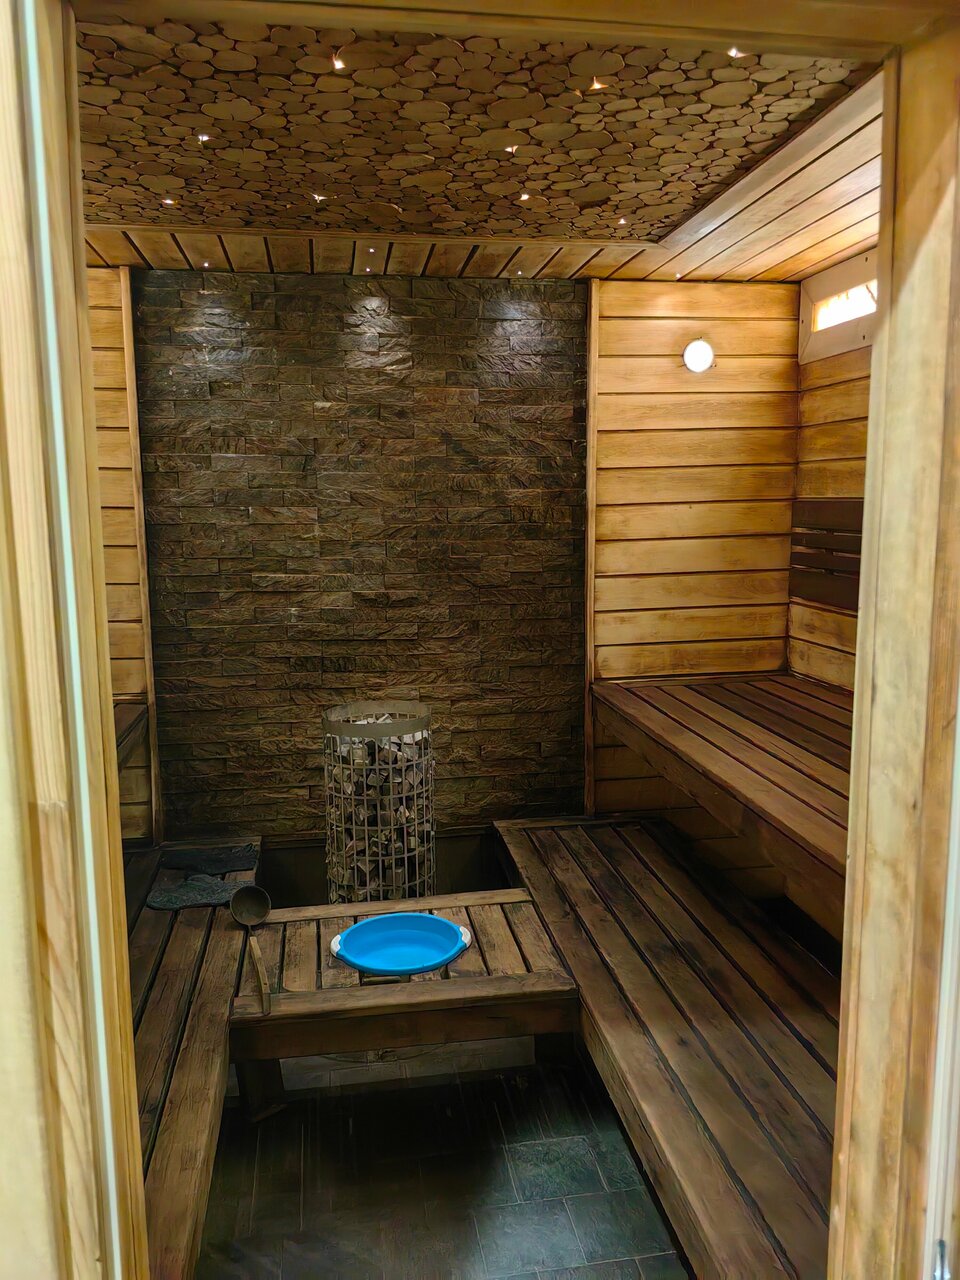 «5 мест, где попариться в бане в Анапе» фото материала